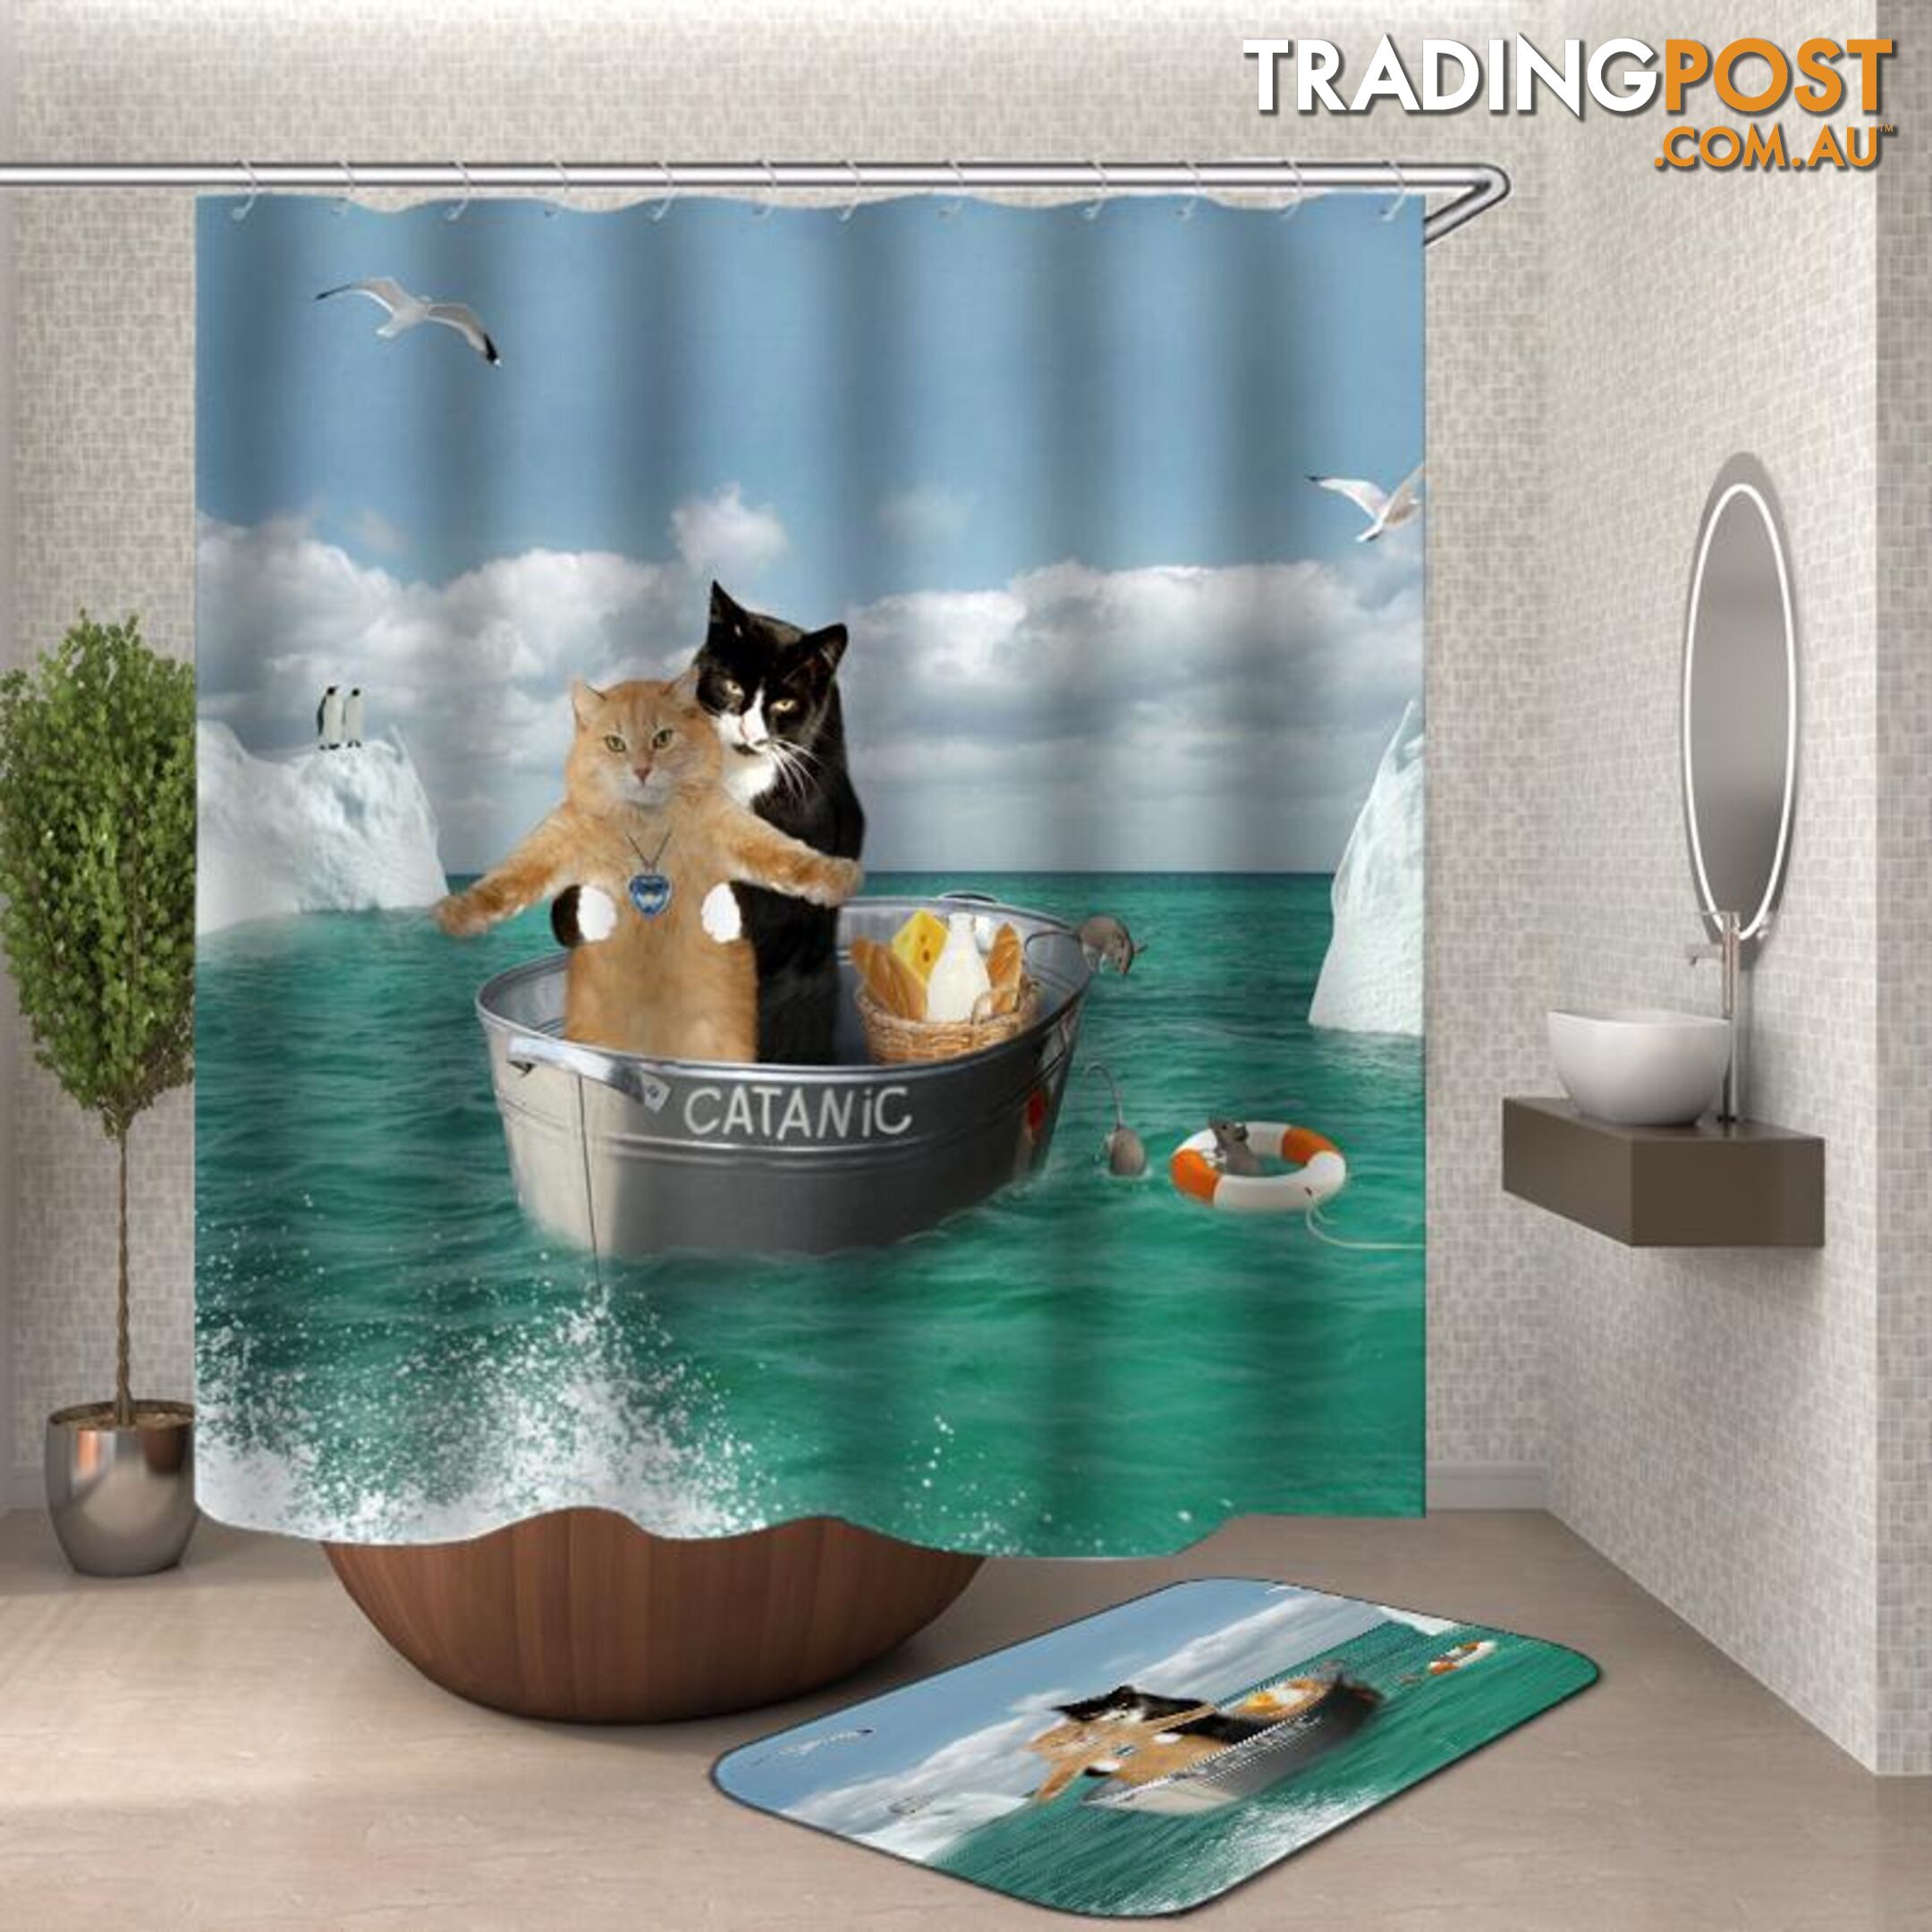 âCatanicâ Funny Cats Shower Curtain - Curtain - 7427046106450